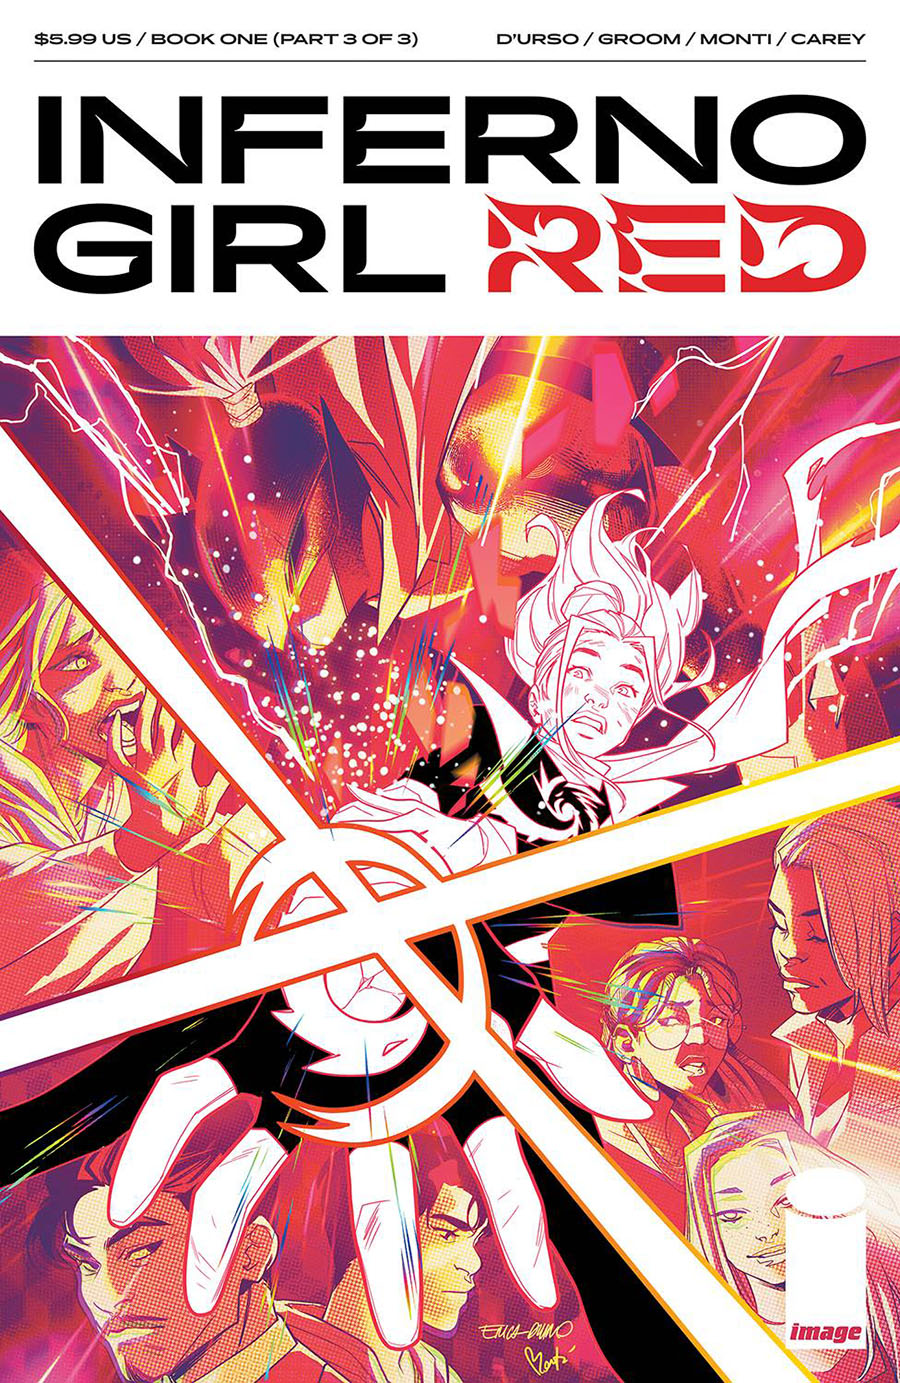 Inferno Girl Red Book 1 #3 Cover A Regular Erica Durso & Igor Monti Cover